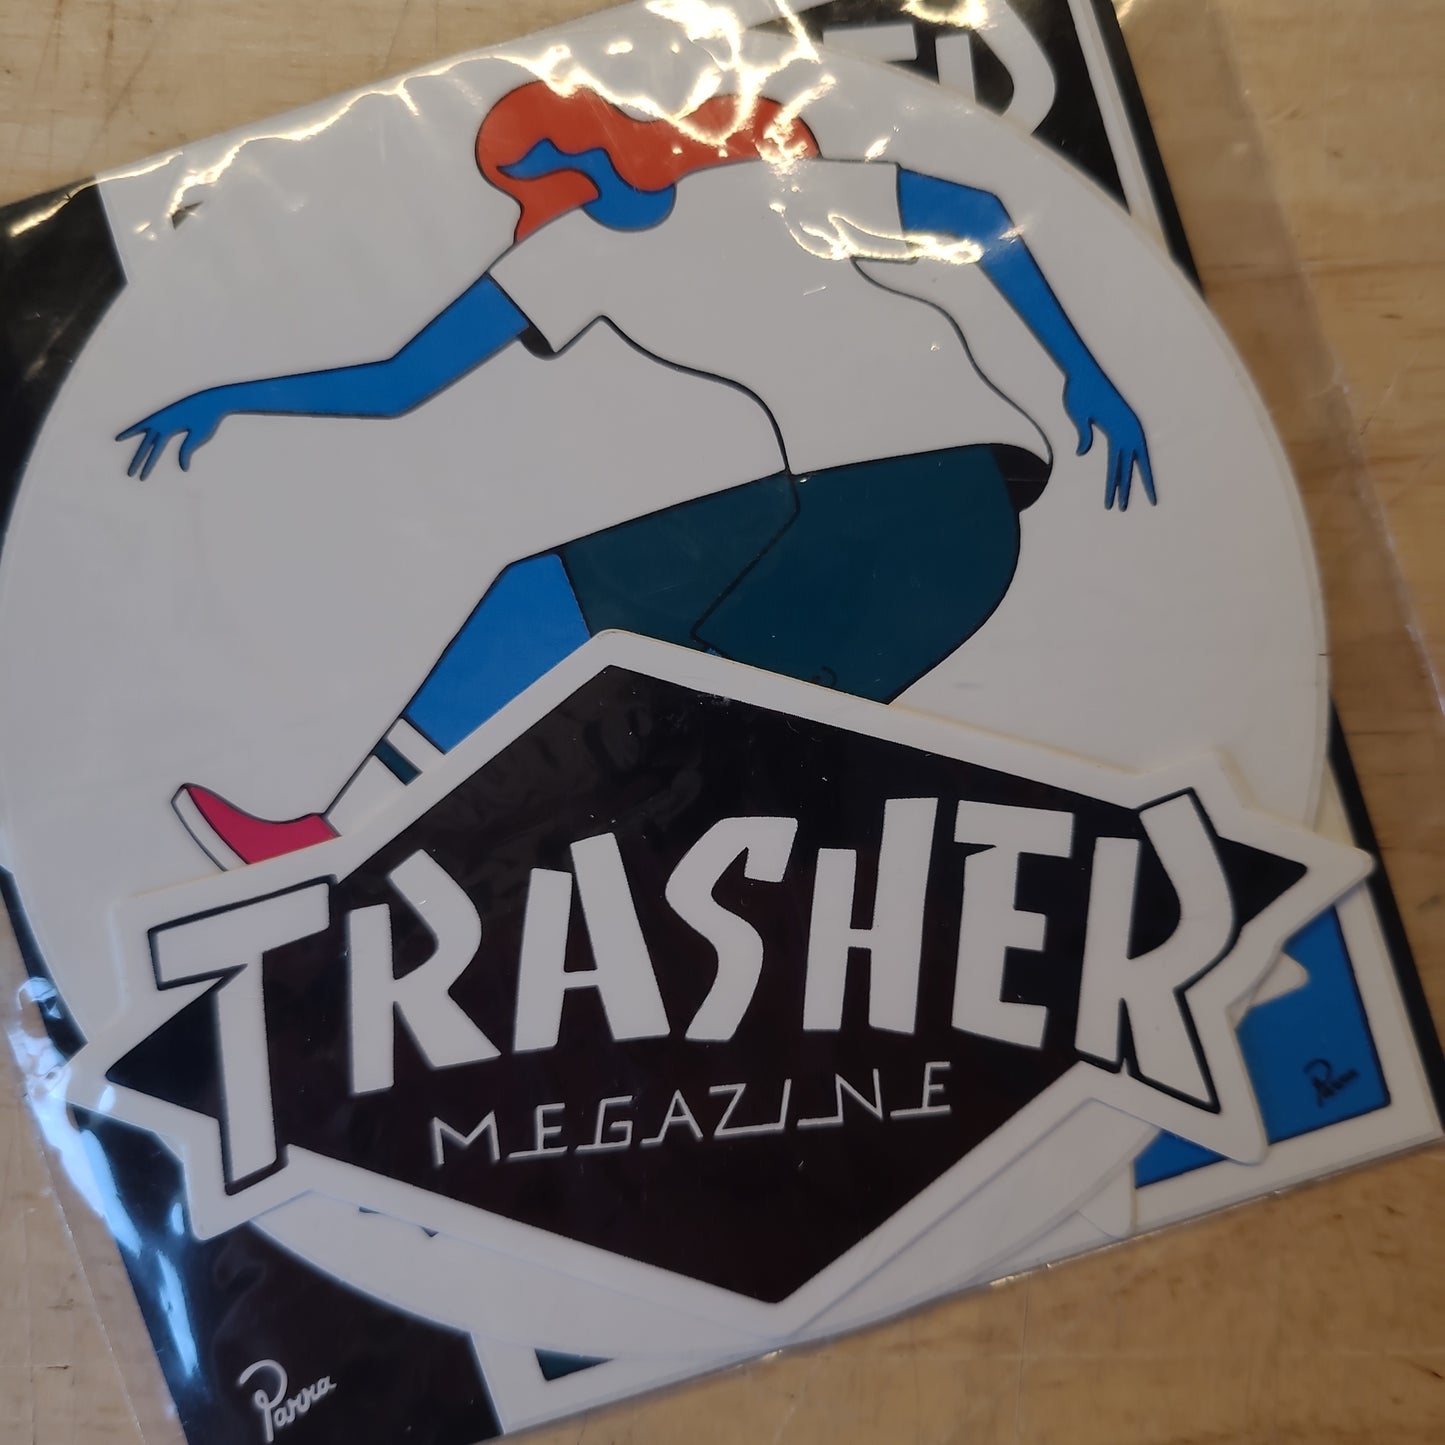 Thrasher - Trasher Megazine Sticker Pack